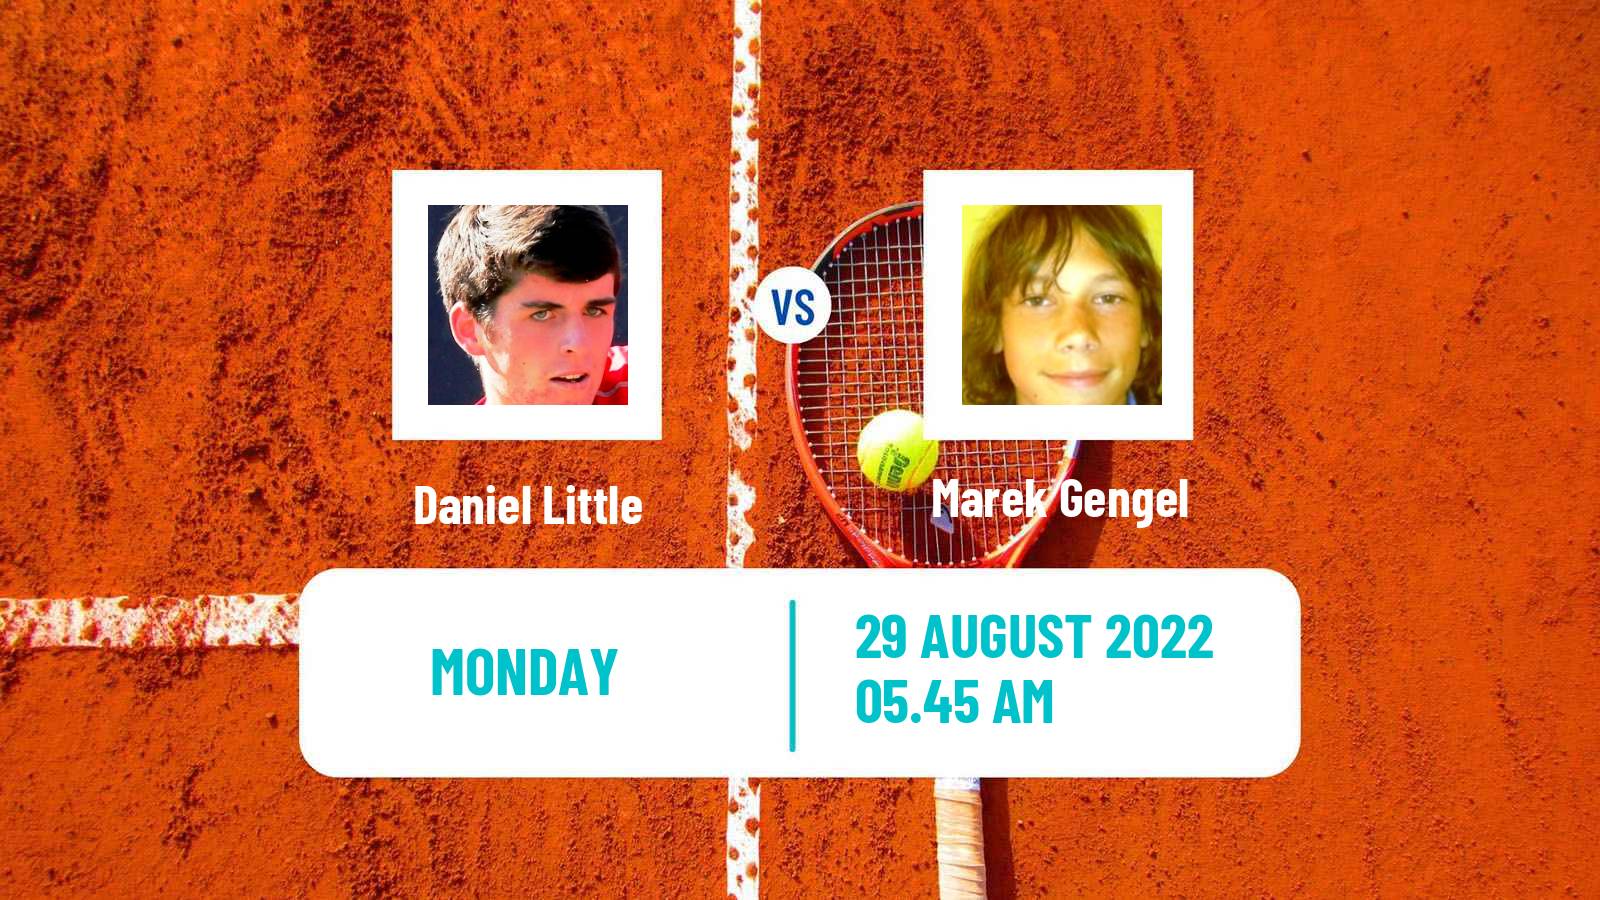 Tennis ATP Challenger Daniel Little - Marek Gengel